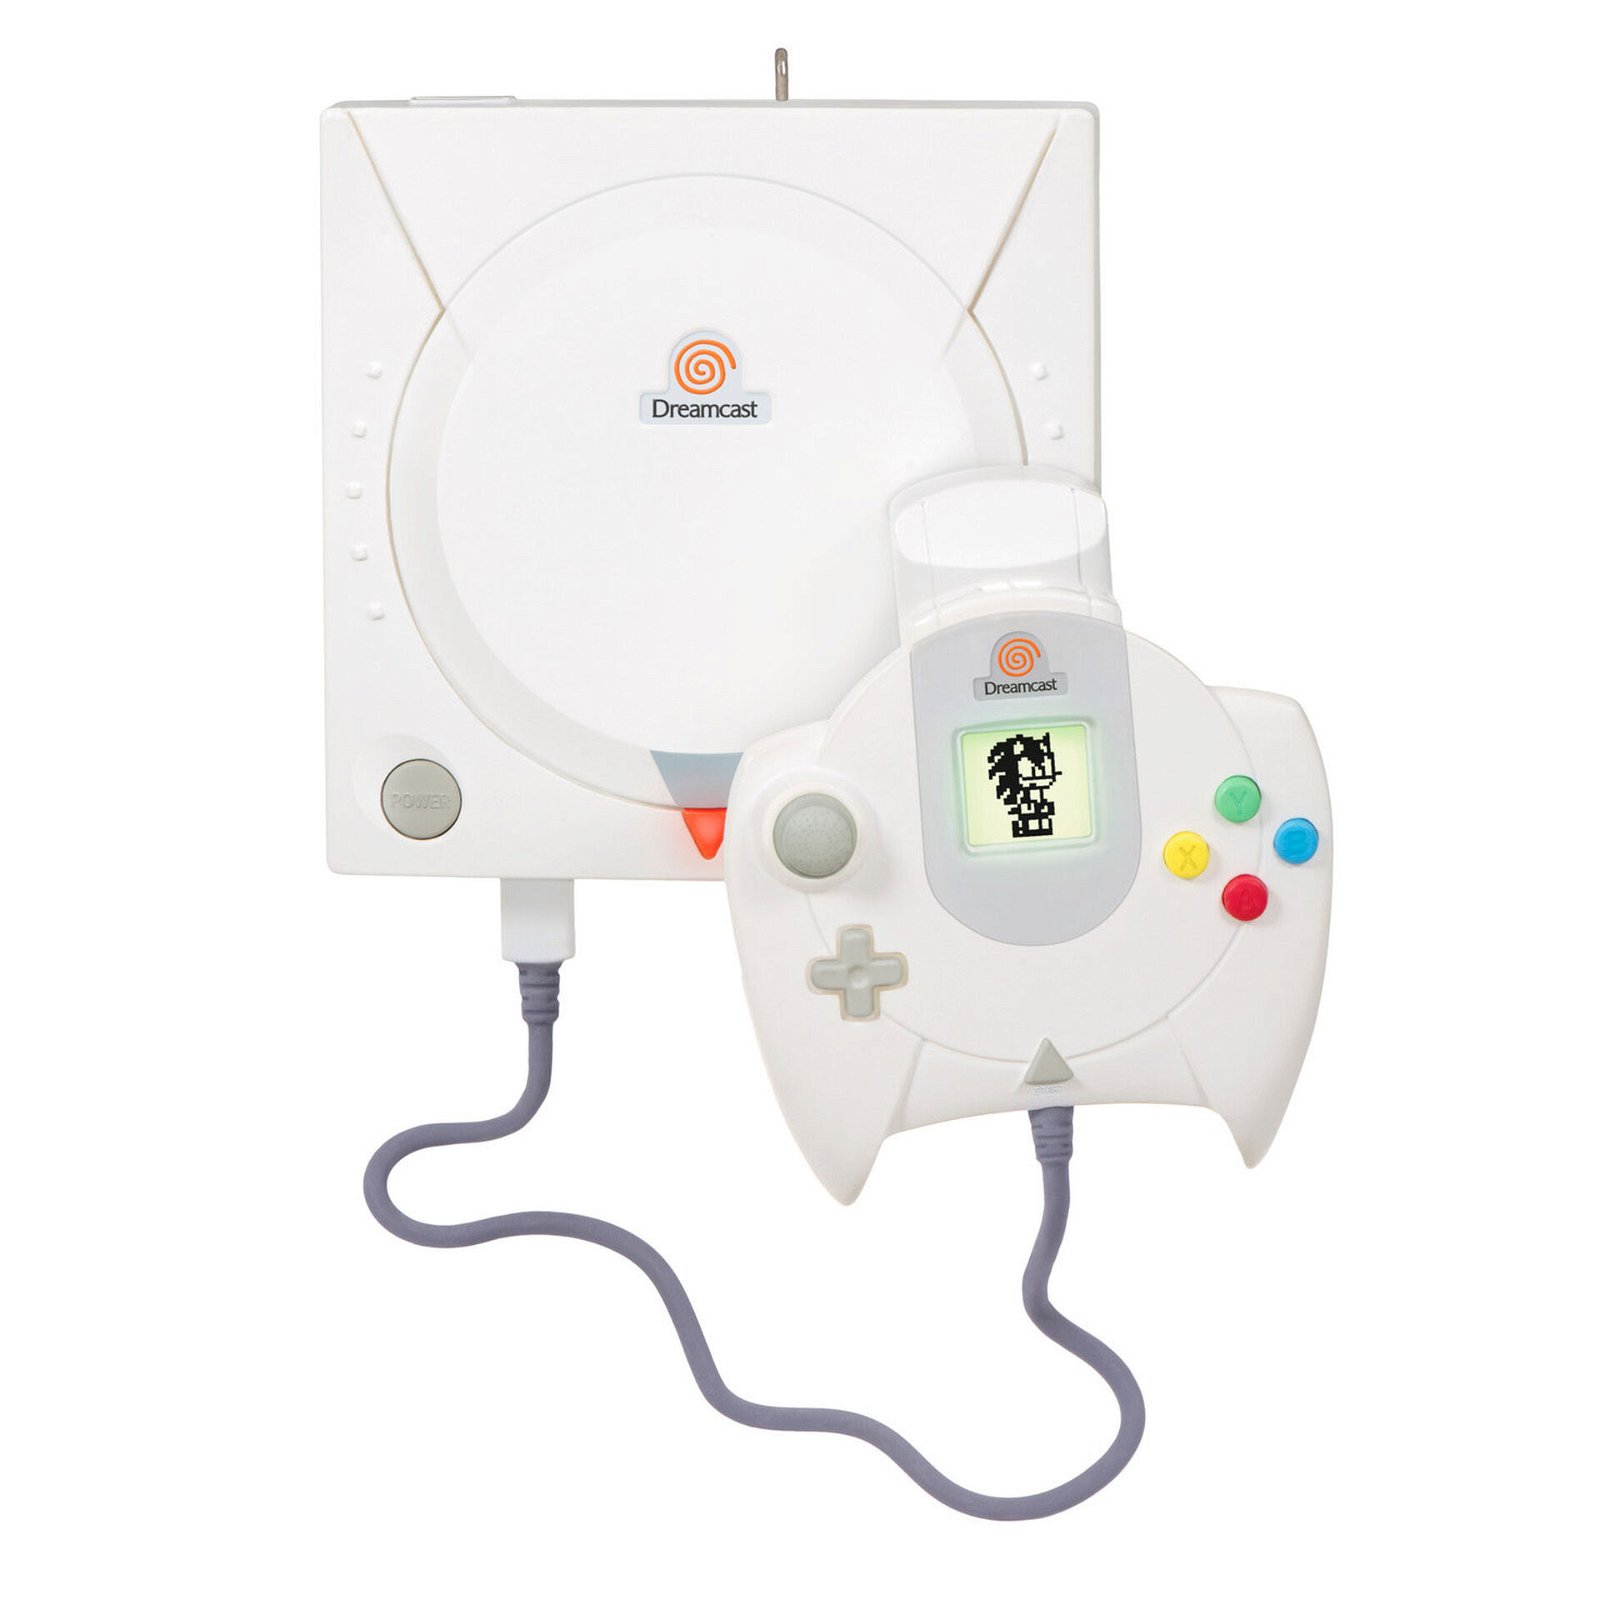 SEGA-Dreamcast-Console-Keepsake-Ornament_2299QXI7457_01